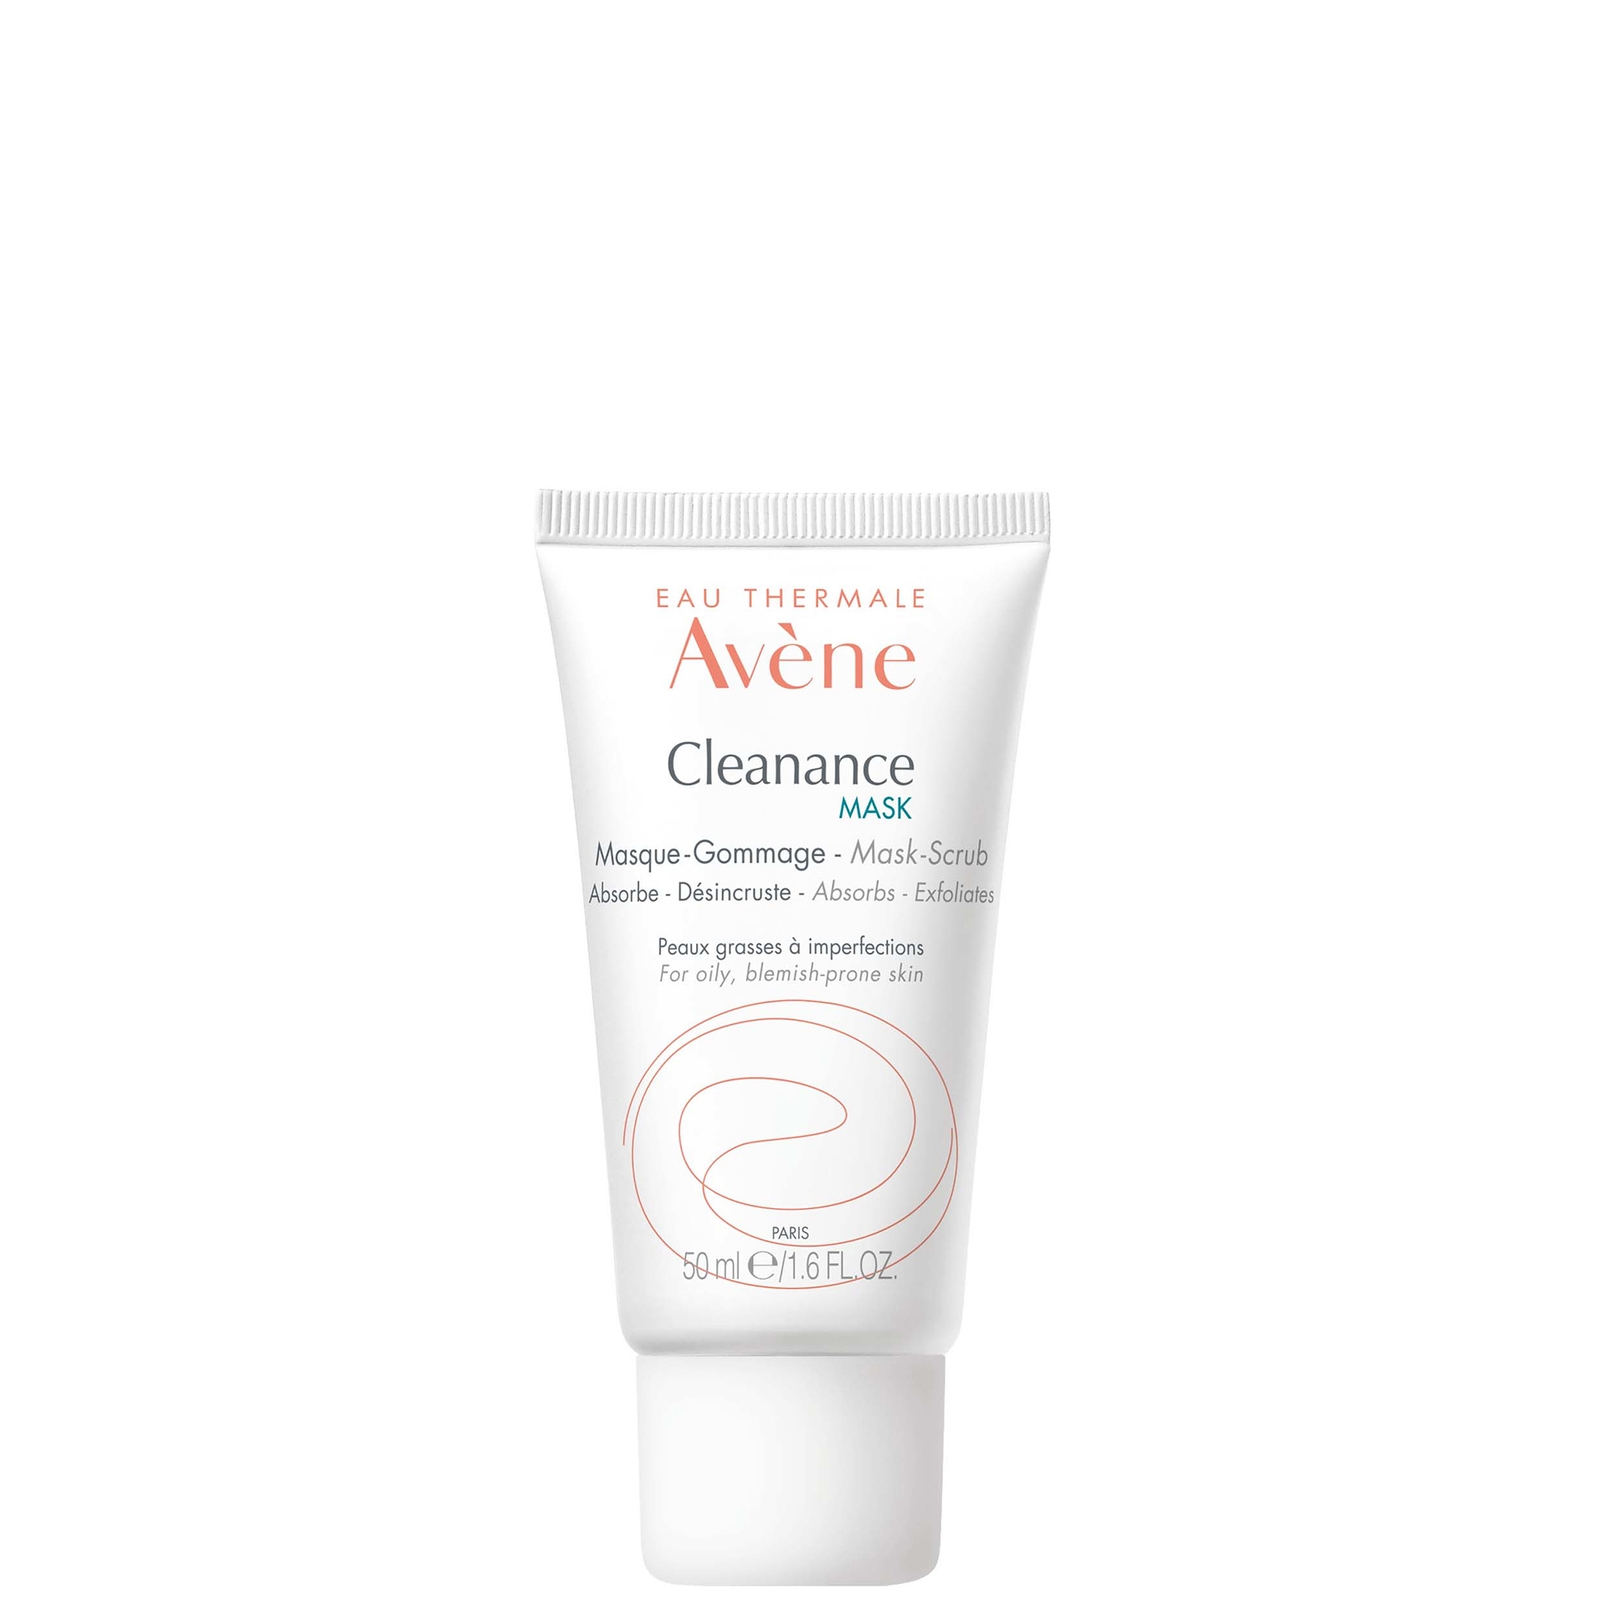 Avene Cleanance Mask for Oily, Blemish-Prone Skin 50ml